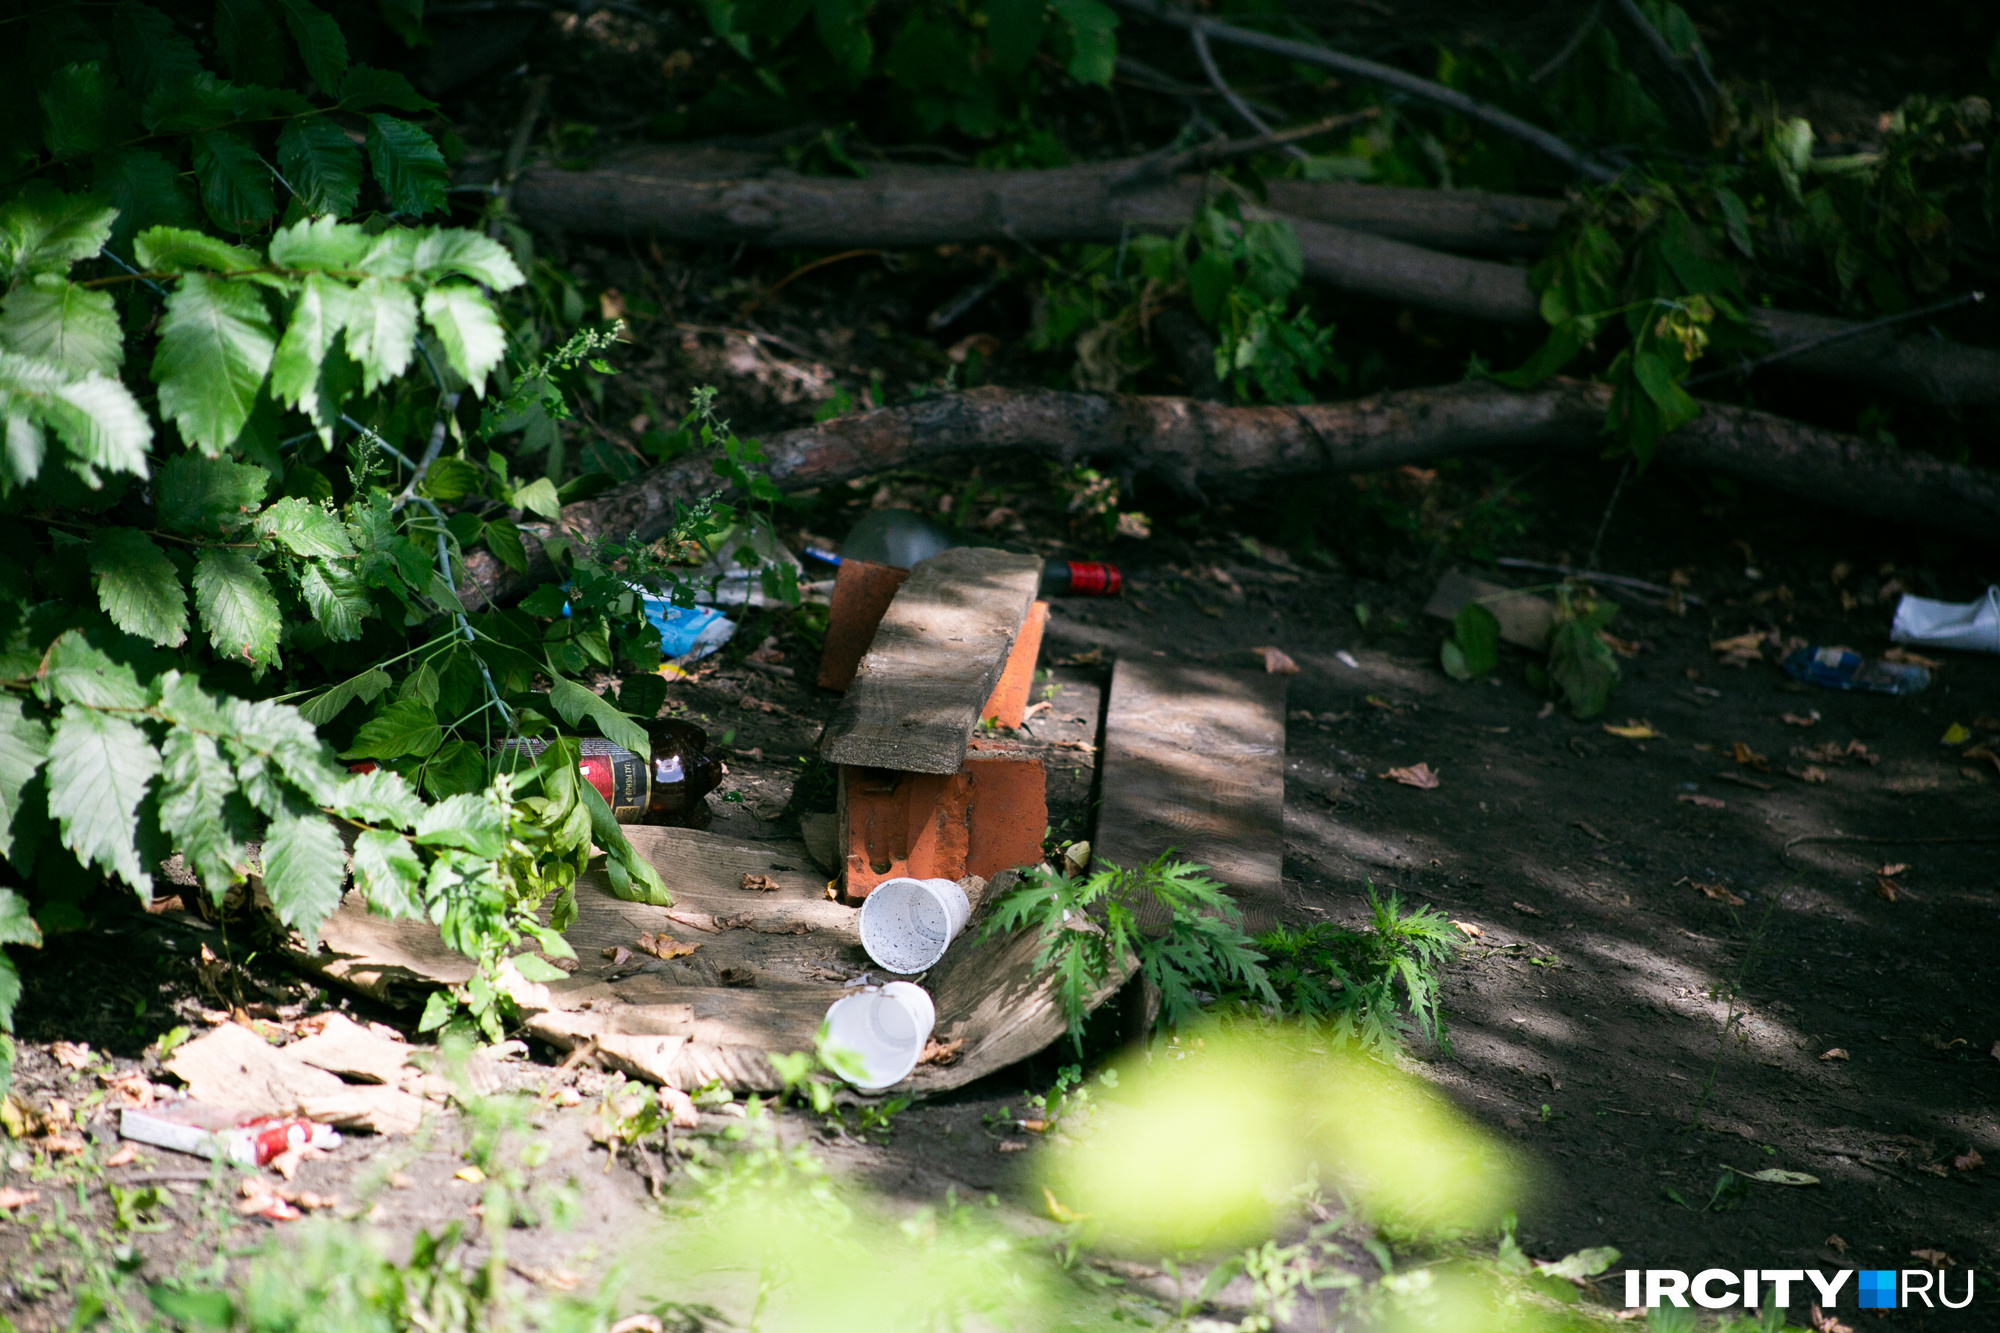 По дороге в кустах можно встретить мусор и импровизированную лавочку — здесь часто отдыхают лица без определенного места жительства